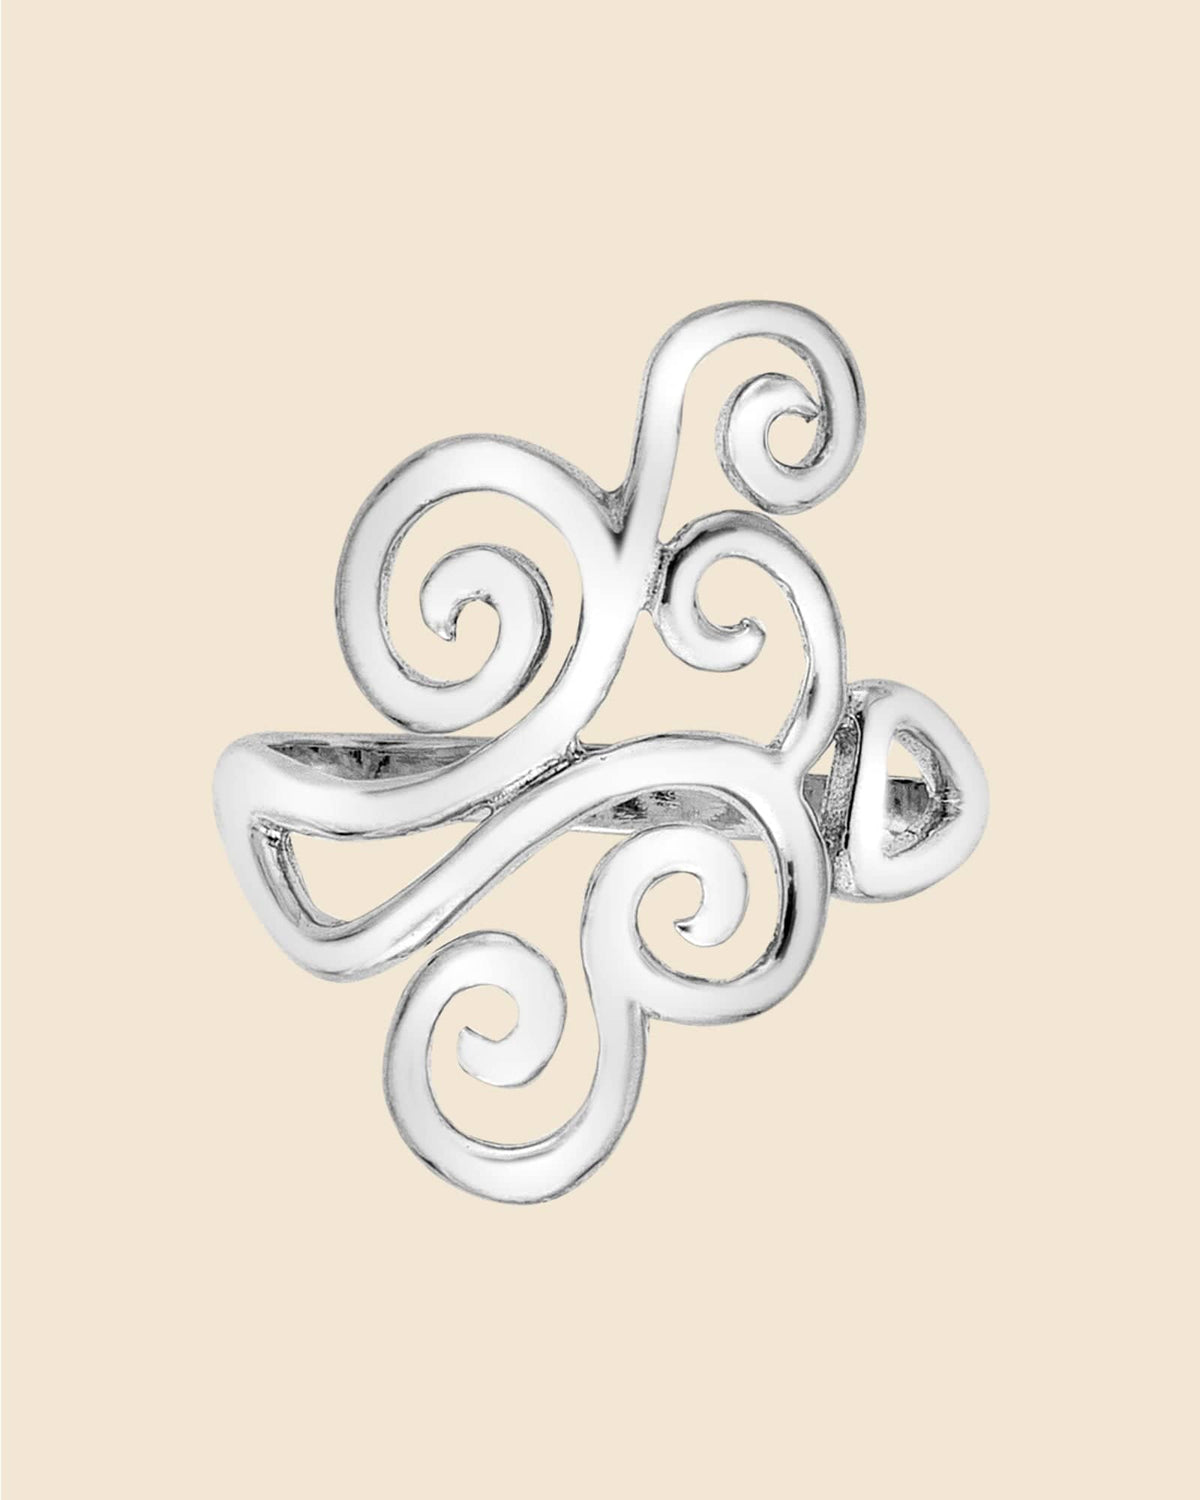 Sterling Silver Swirl Ring